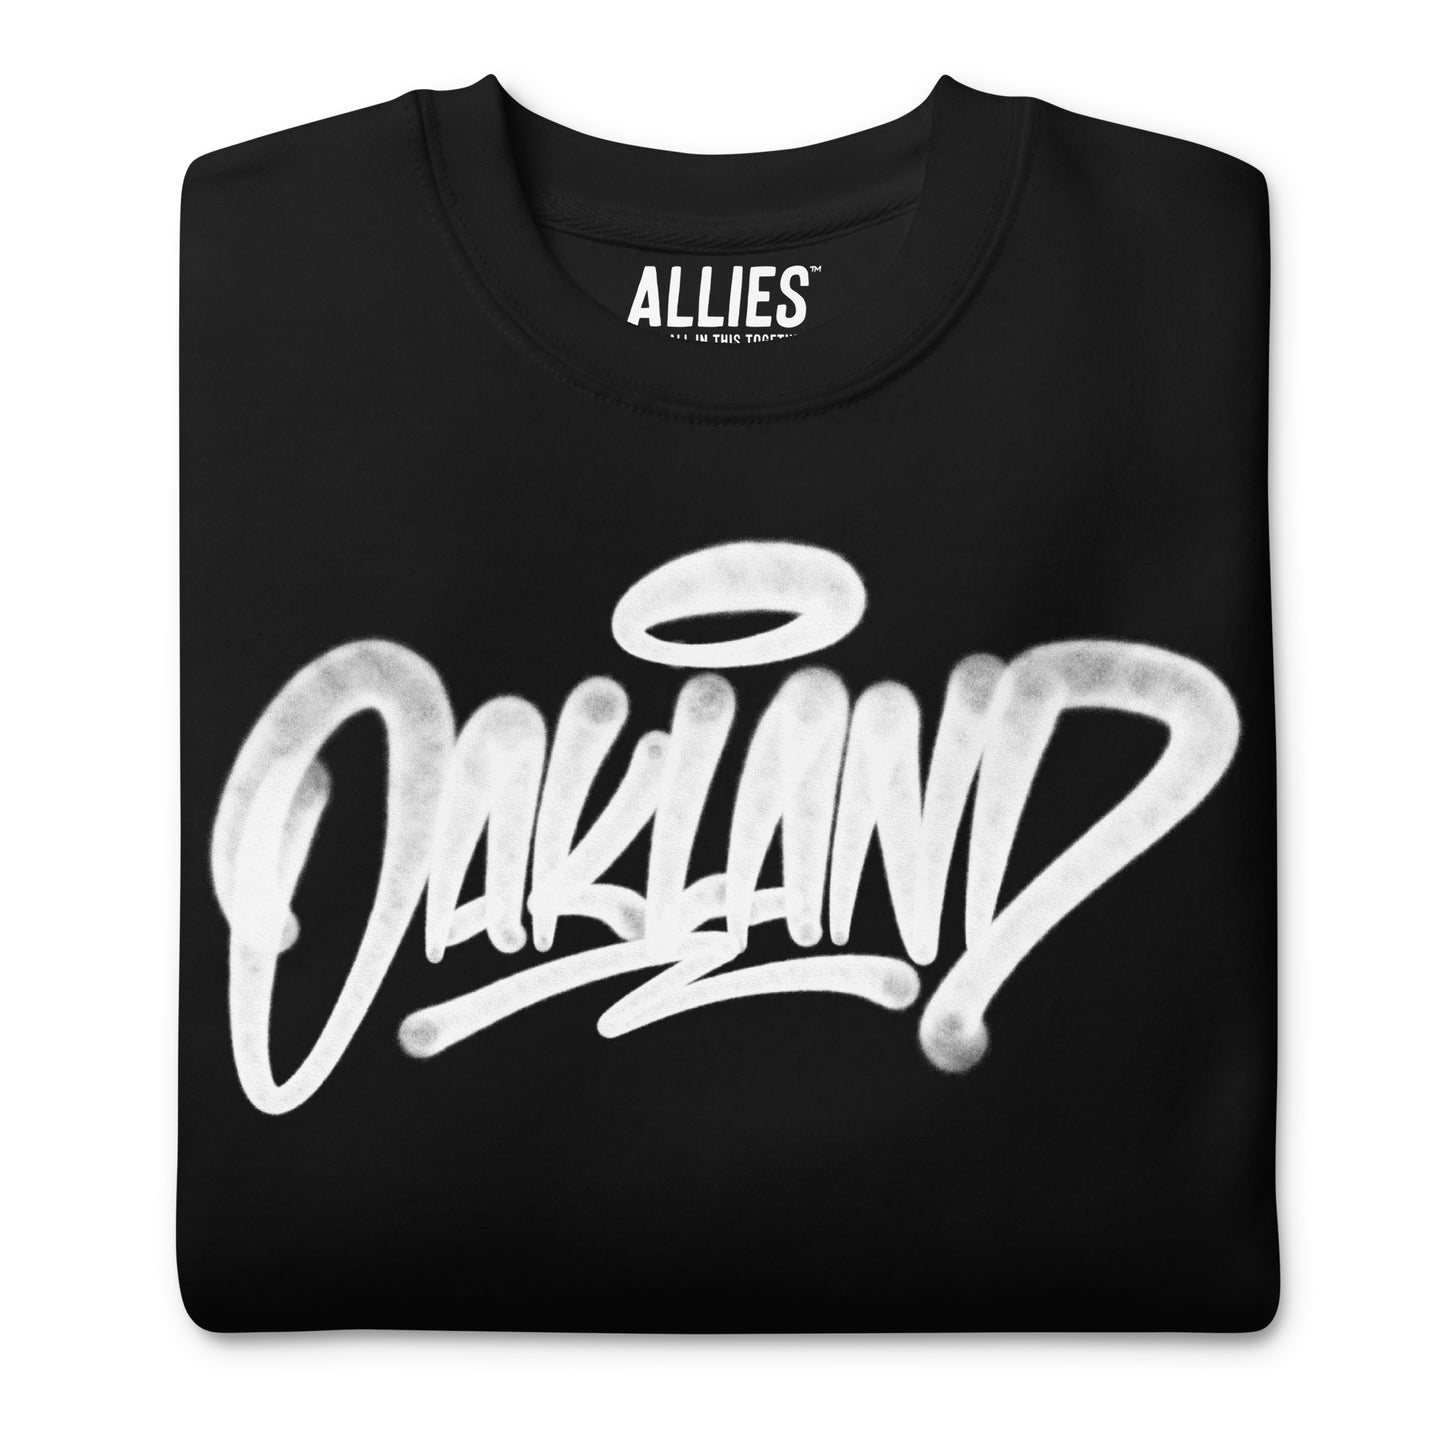 Oakland Handstyle Sweatshirt